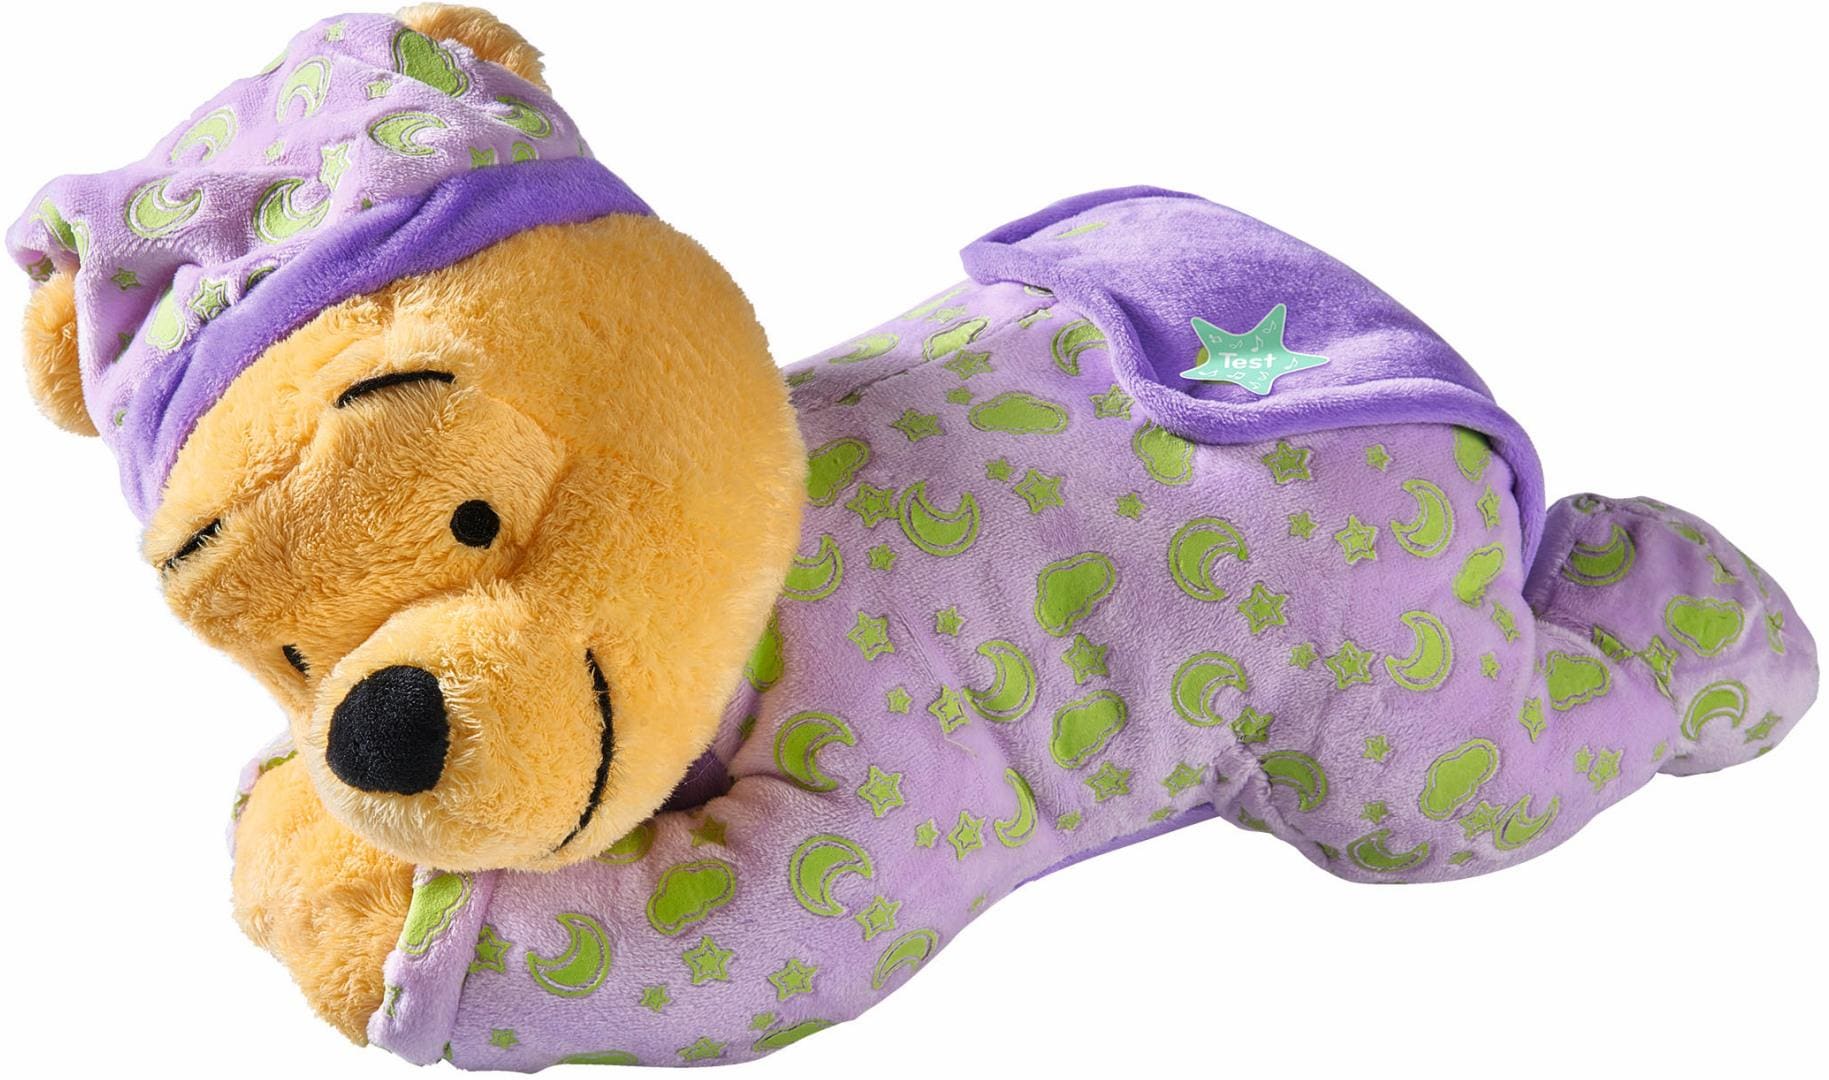 Original Disney echte Winnie Pooh schläfrigen Stich Erdbeer bär